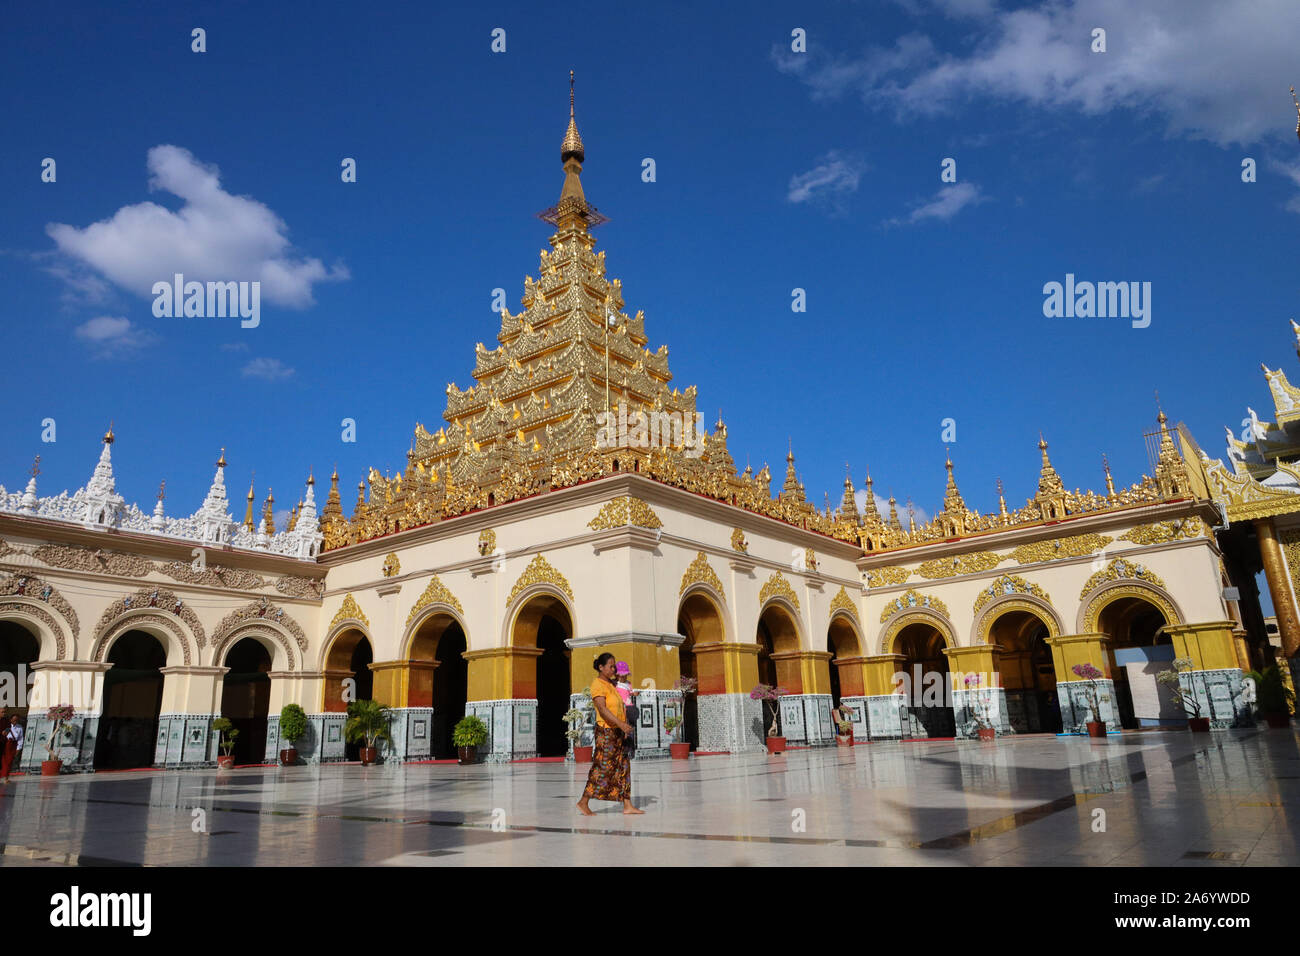 MANDALAY MYANMAR(BIRMANIE)/29 - Oct 2019 : La pagode Mahamuni ou temple du Bouddha Mahamuni est l'un des plus célèbres Statue Bouddhiste en Birmanie qui est l Banque D'Images